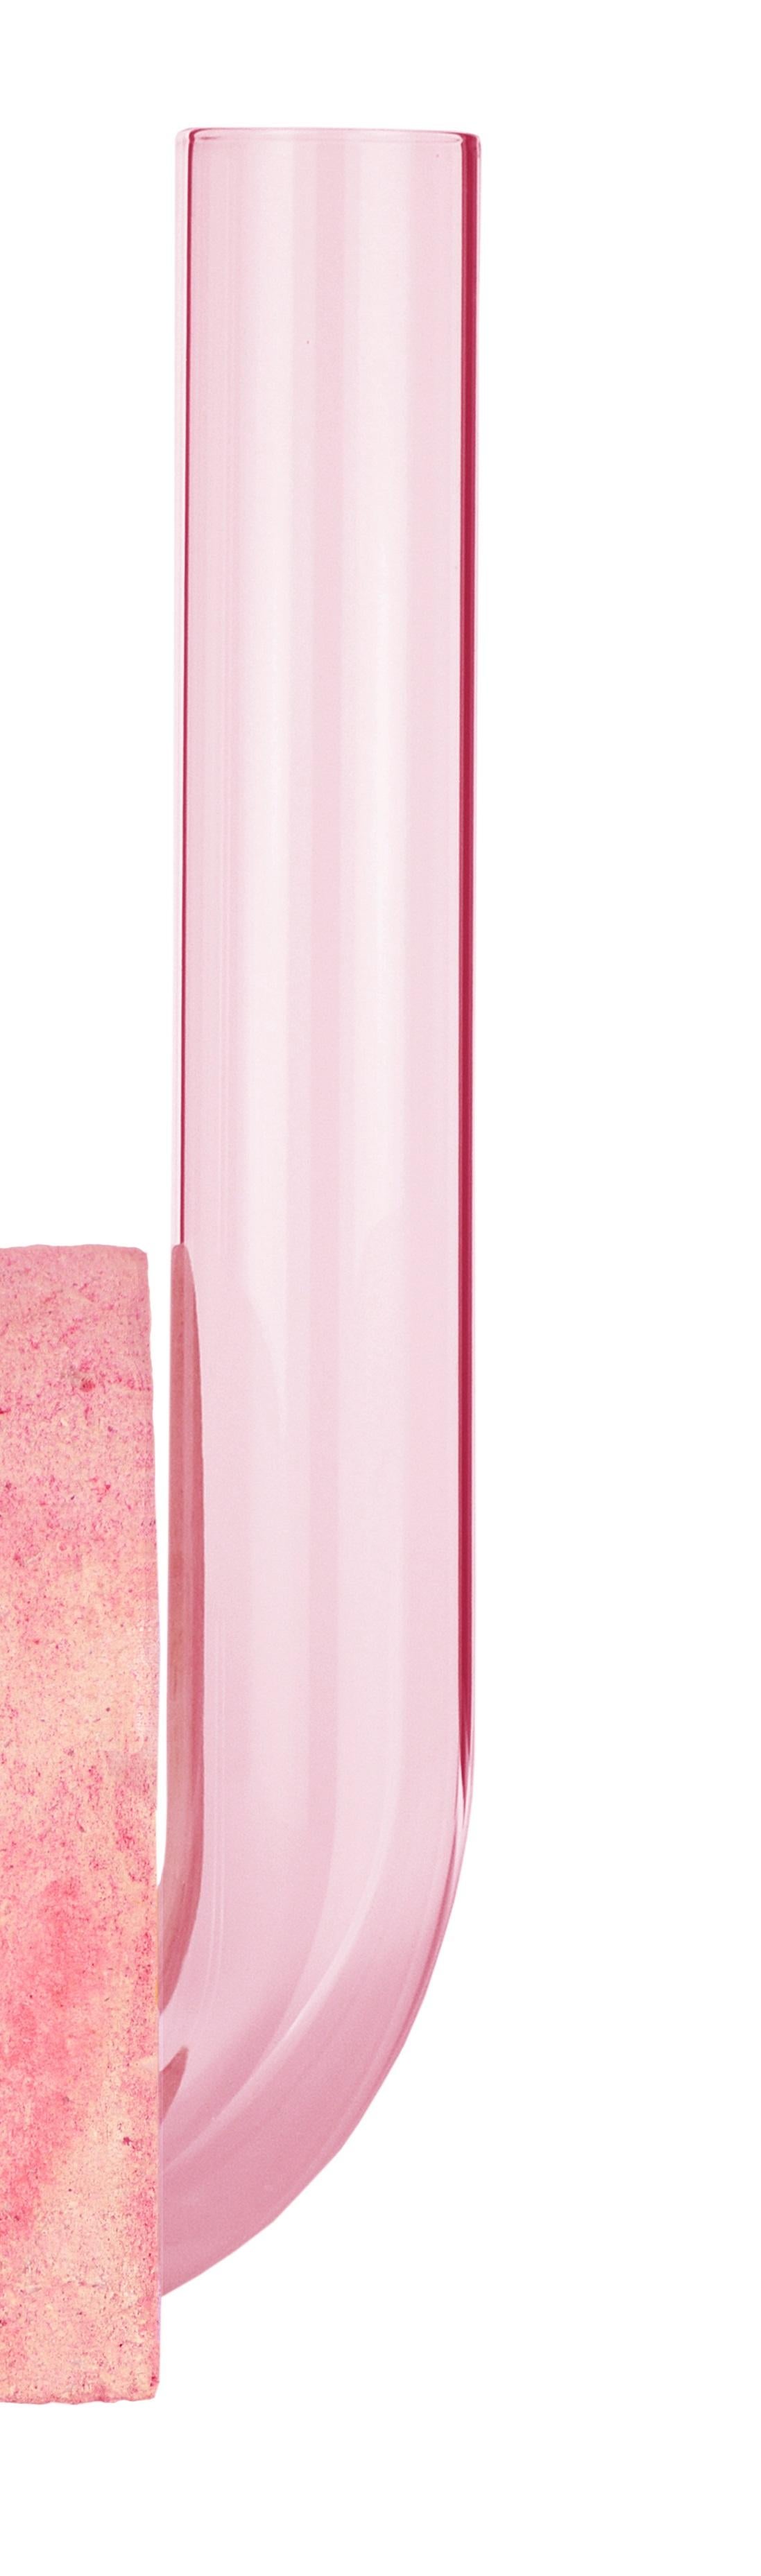 Post-Modern Pink-Pink Cochlea Della Liberazione Soils Edition Vase by Coki Barbieri For Sale